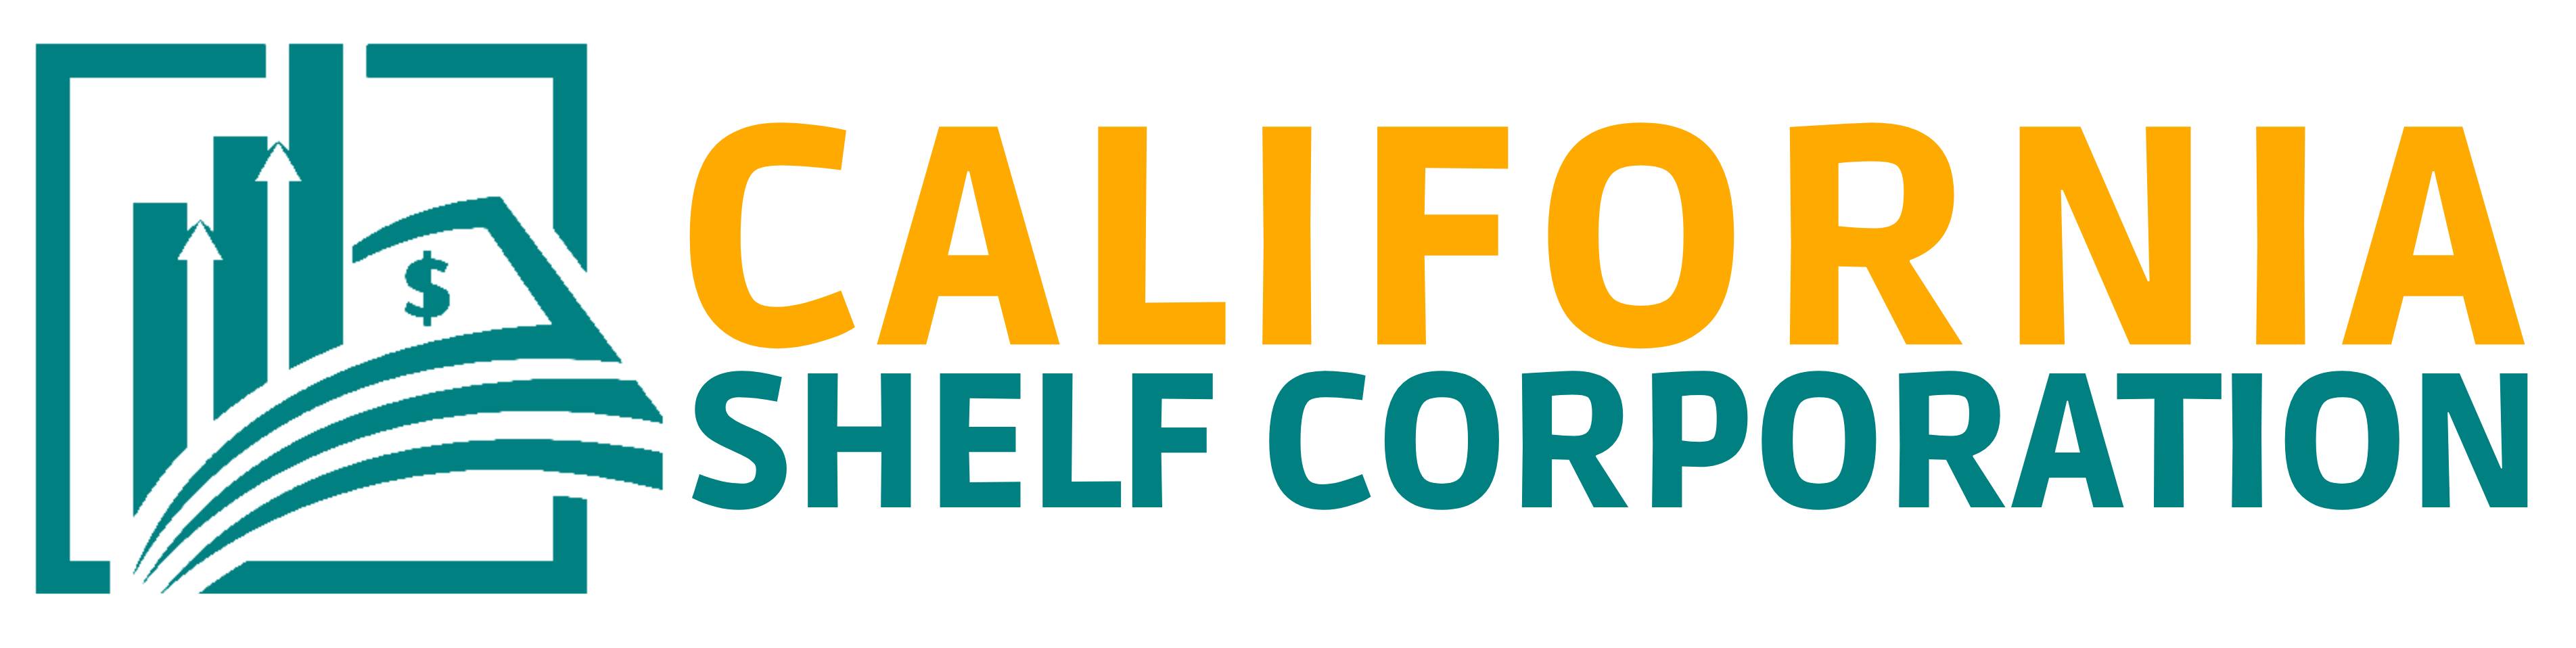 California Shelf Corporation Logo